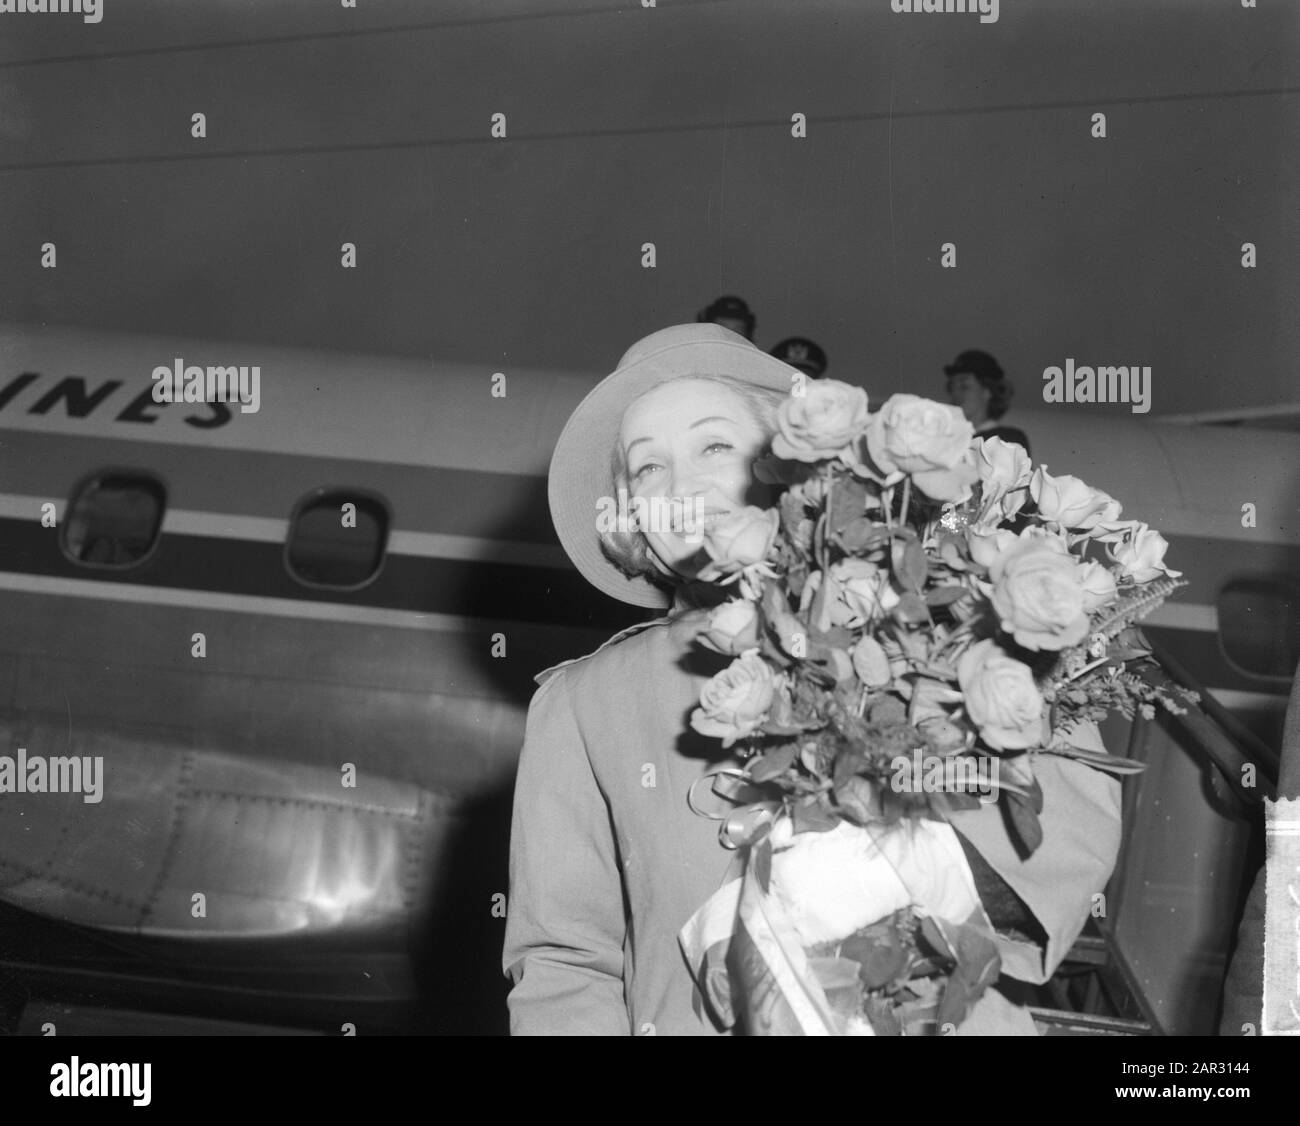 Marlene Dietrich aux Pays-Bas pour la représentation au Grand Gala du Dique. Marlene Dietrich Date: 11 Octobre 1963 Lieu: Pays-Bas Nom Personnel: Dietrich, Marlene Banque D'Images